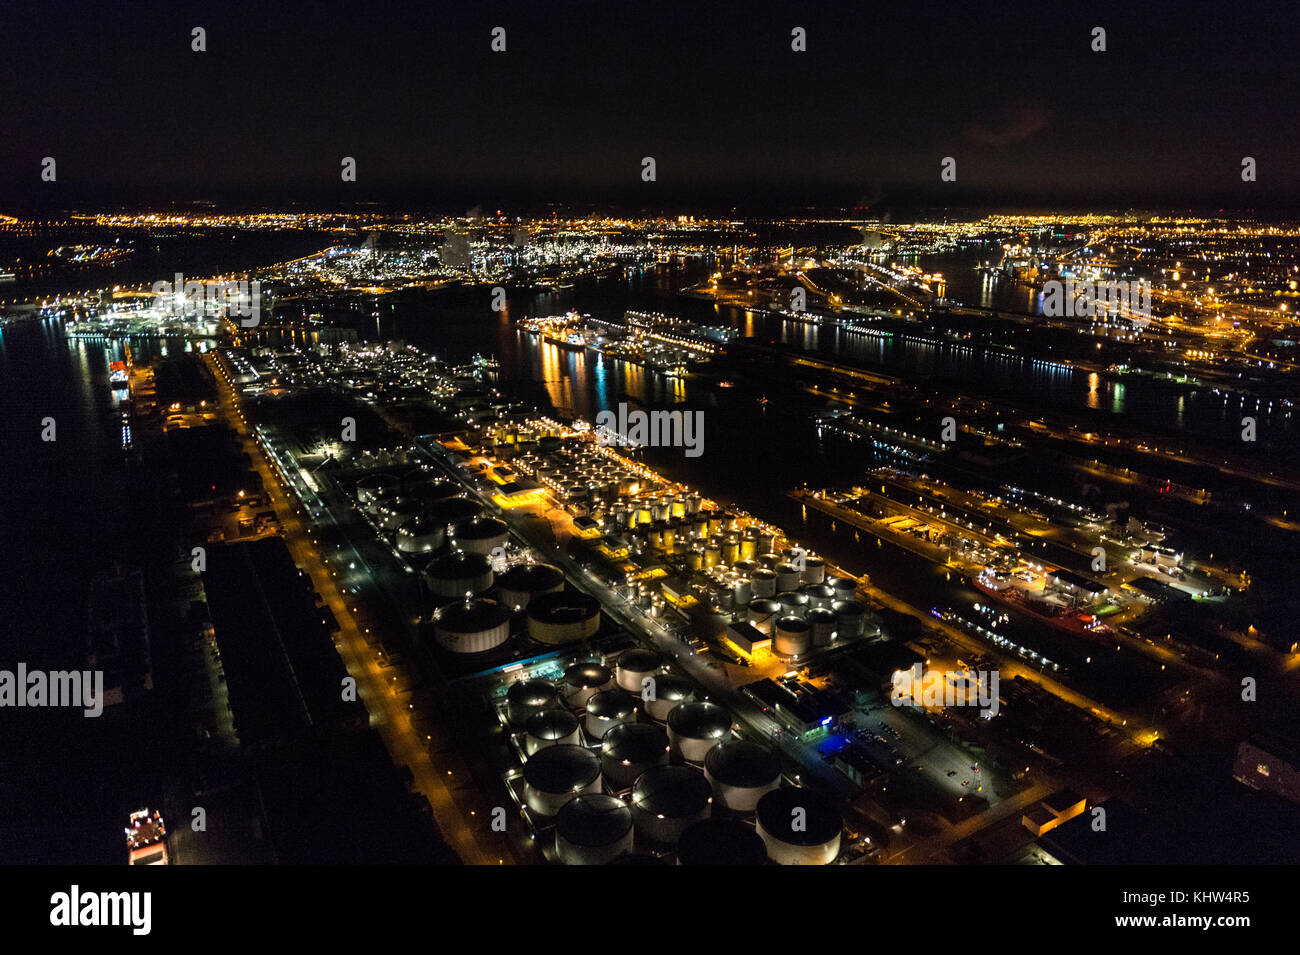 Immagine aerea notturna dei terminali cisterna Mexiconatie e LBC al porto di Anversa Foto Stock